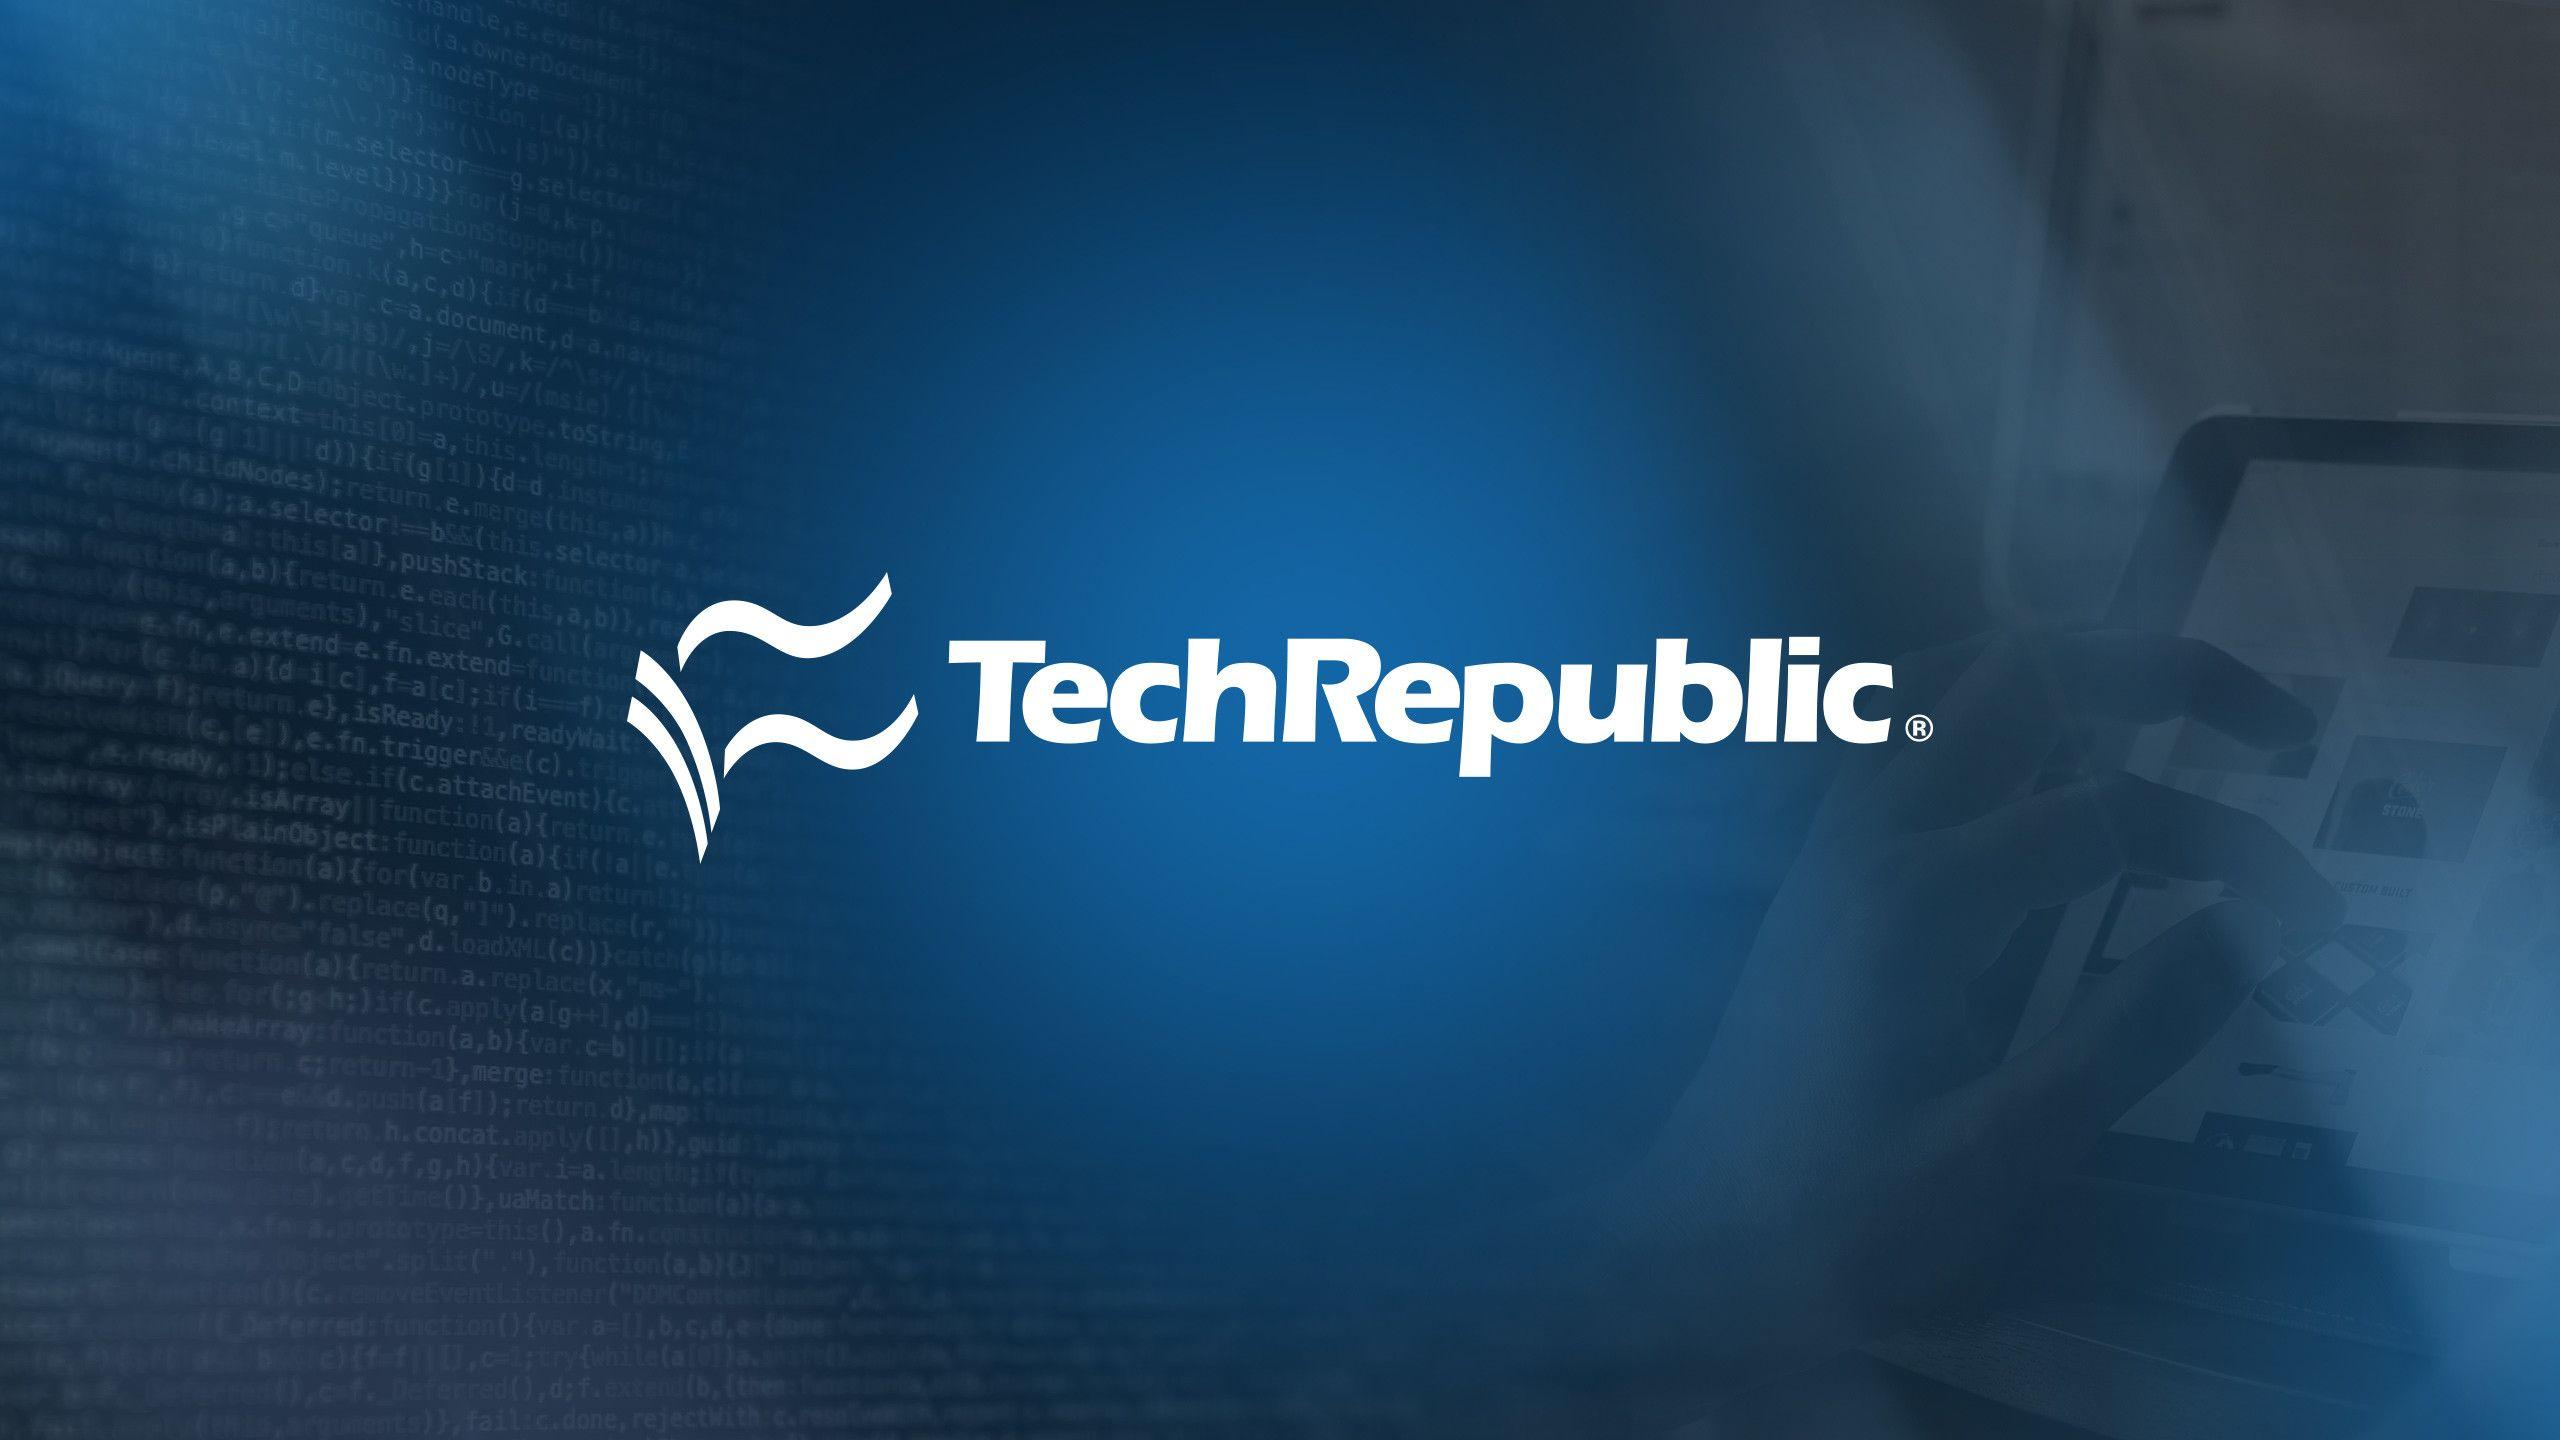 TechRepublic Logo - TechRepublic